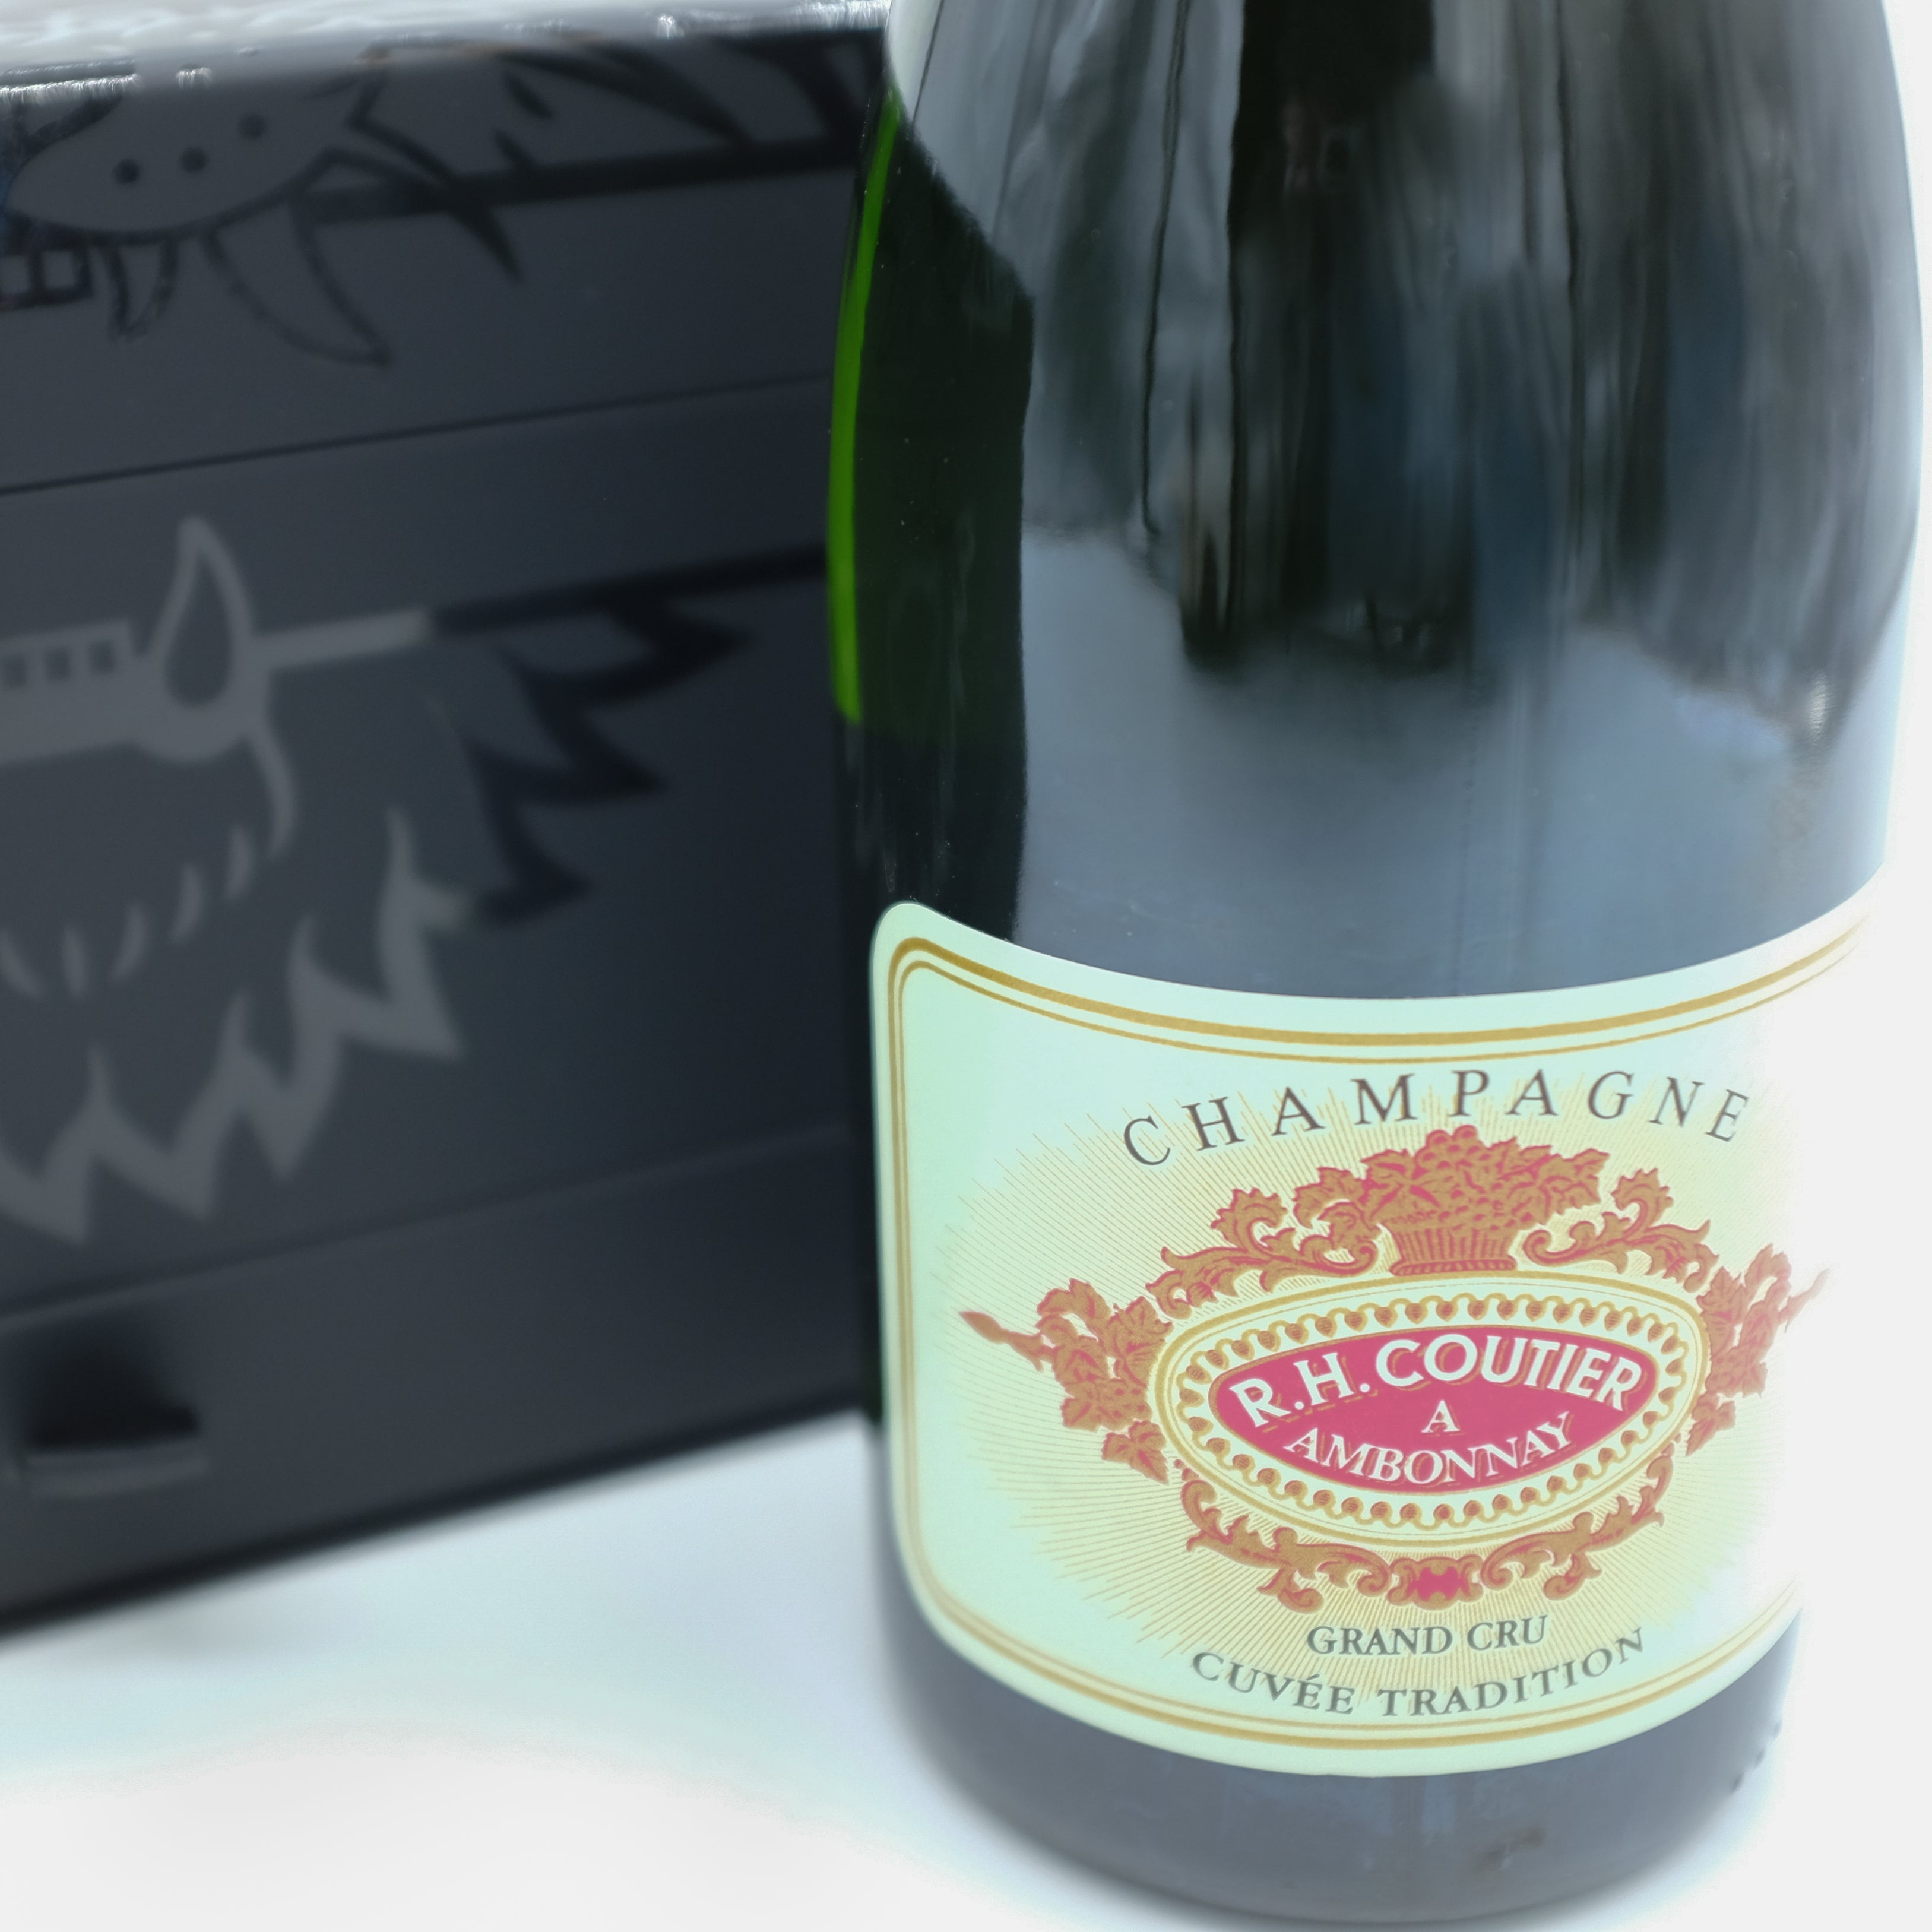 Champagne Dom Perignon . Buy Champagne on-line. Smartbites